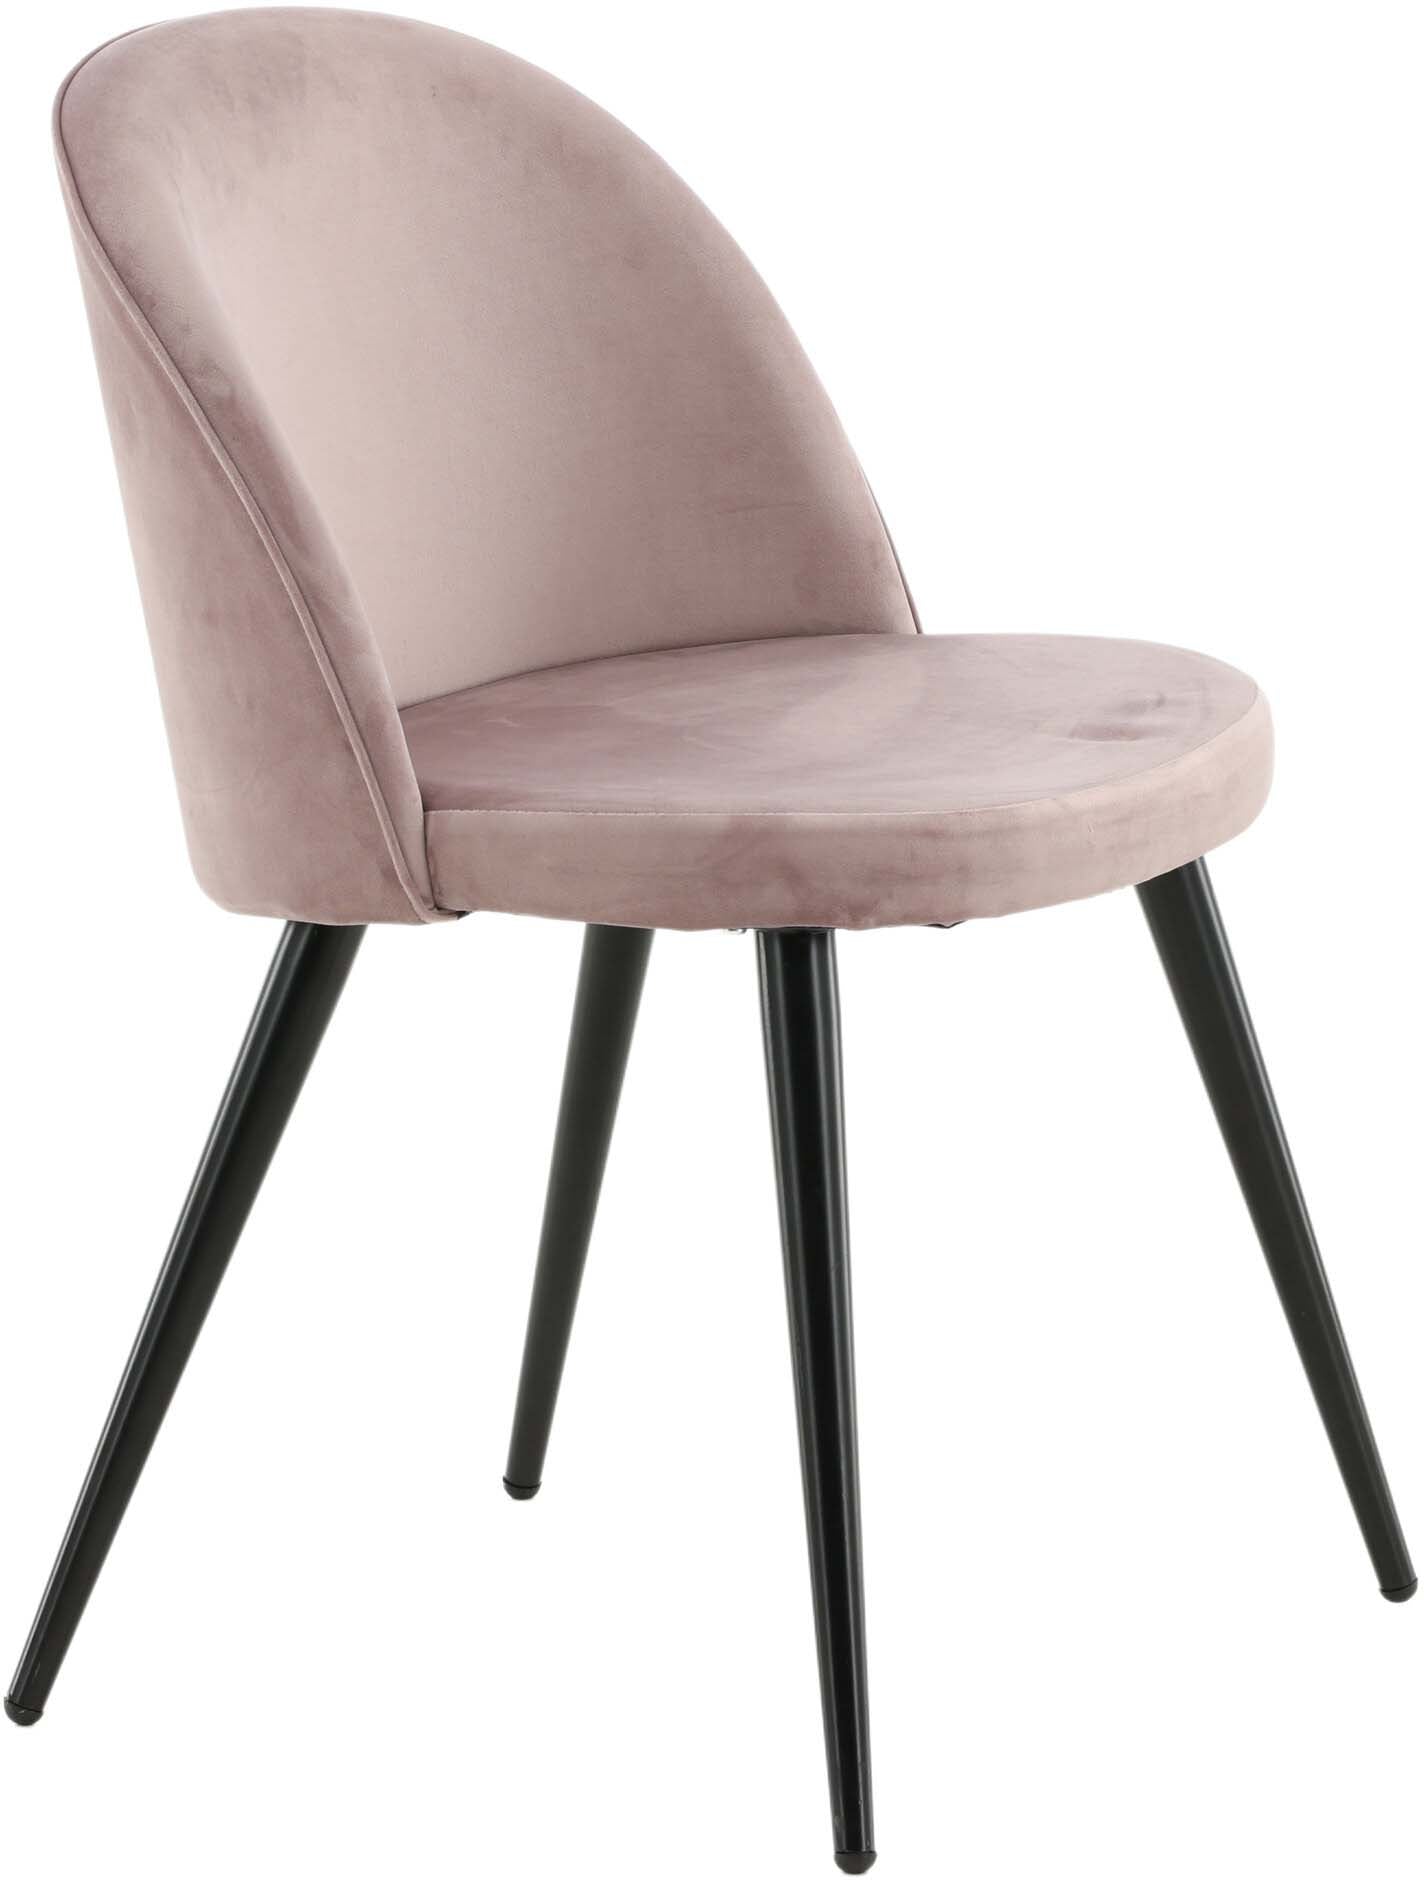 Velvet Matstol Stuhl in Altrosa / Schwarz präsentiert im Onlineshop von KAQTU Design AG. Schalenstuhl ist von Venture Home